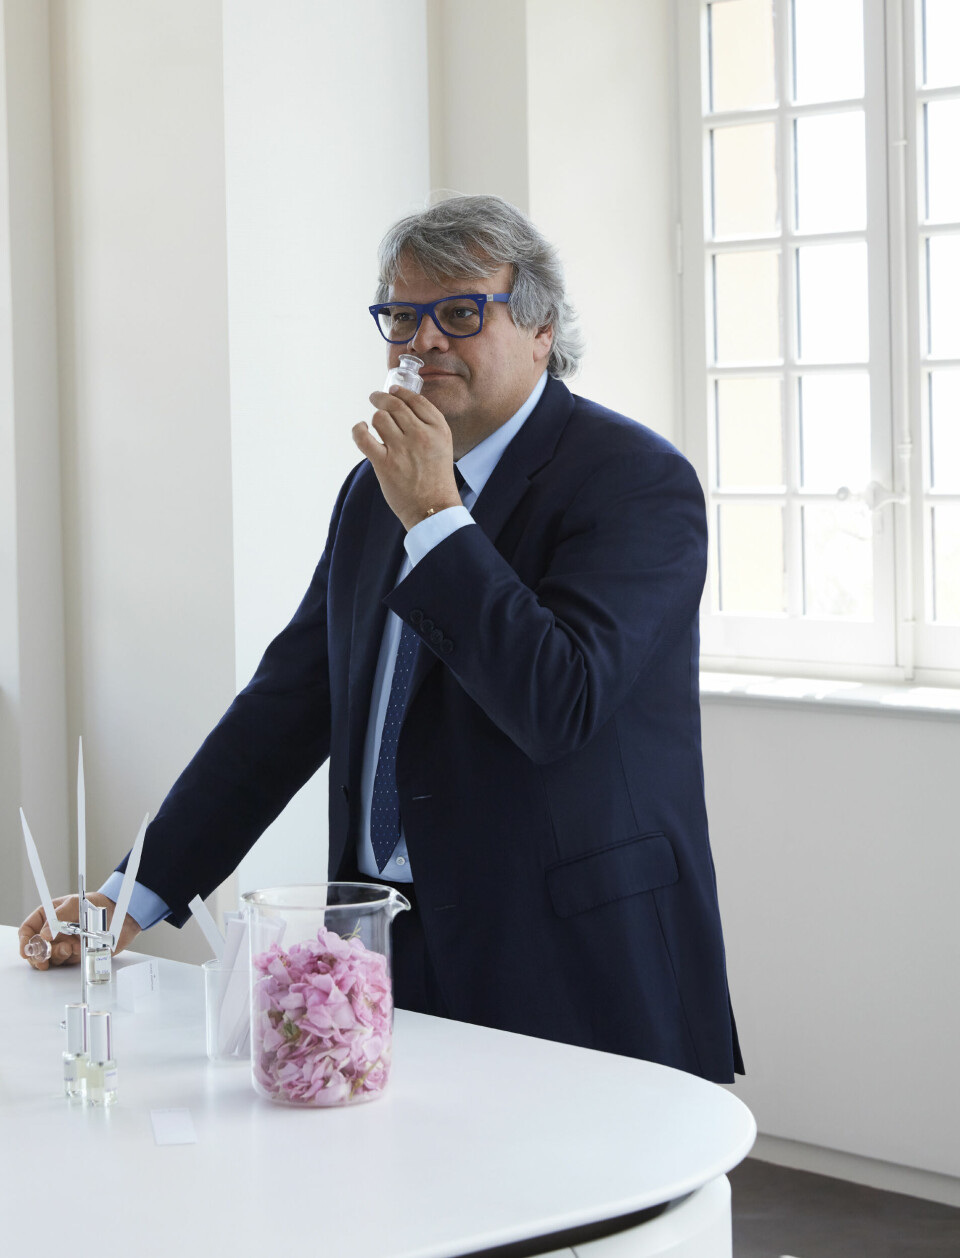 Jaques Cavallier Belletrud har siden 2012 jobbet for Louis Vuitton med å utvikle parfyme.